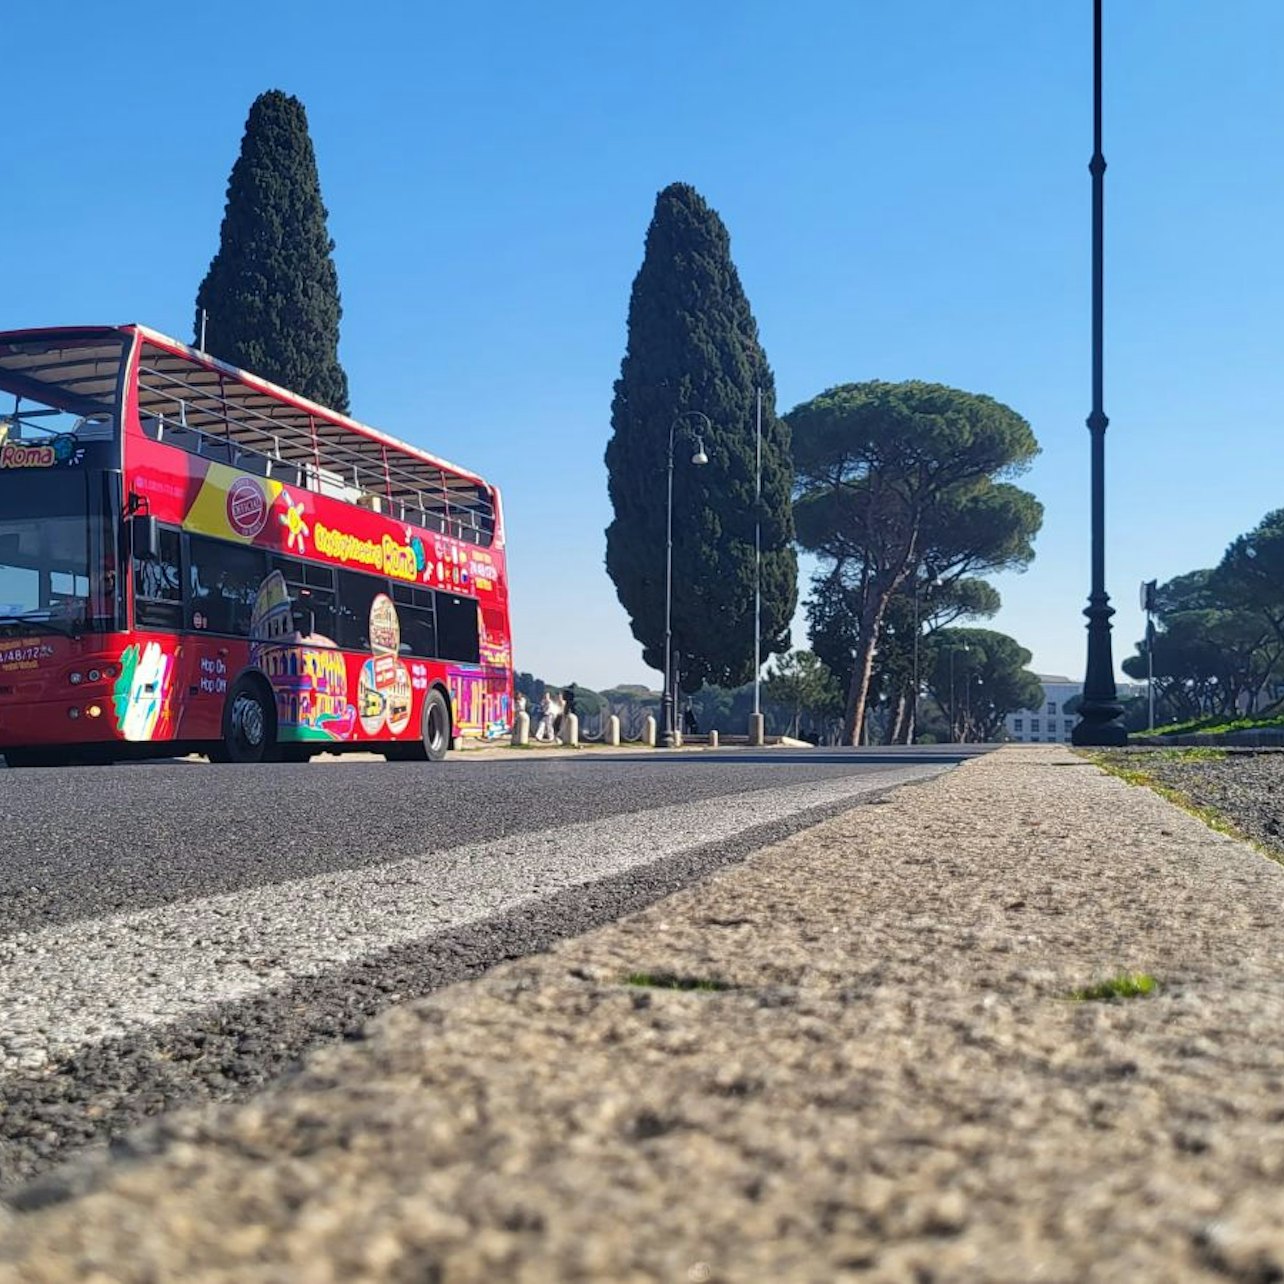 City Sightseeing Roma - Tour Hop-on Hop-off su Autobus Scoperto - Alloggi in Roma